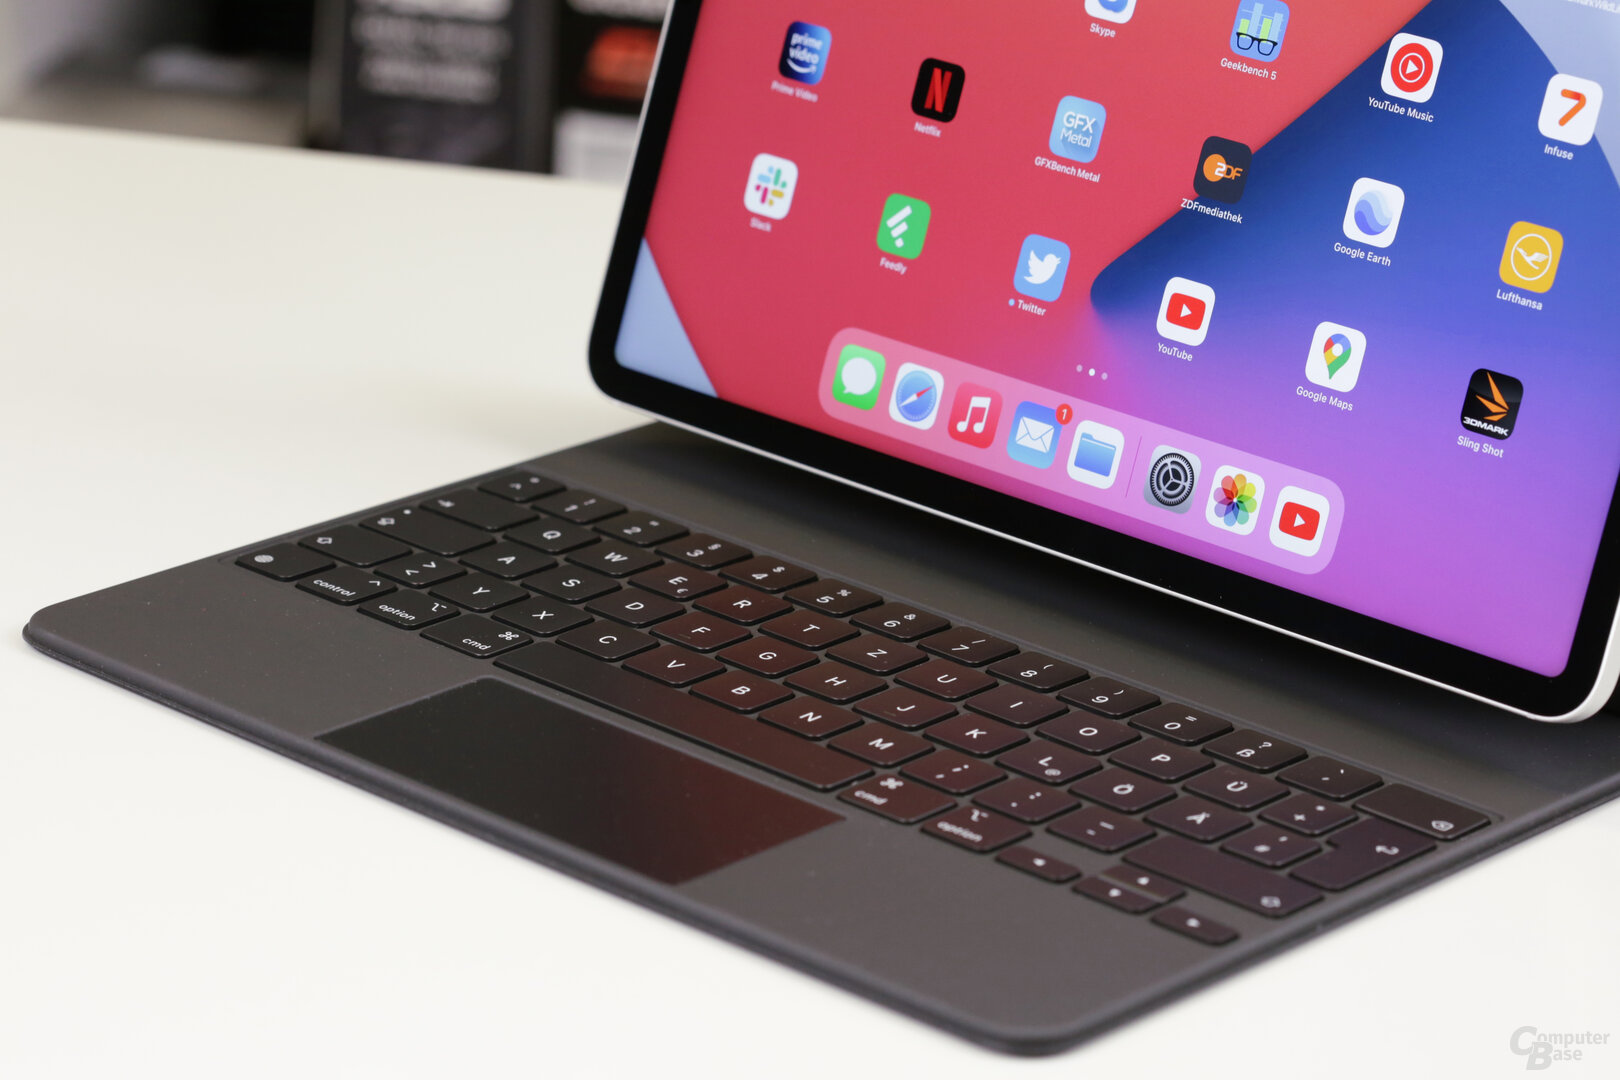 Das iPad Pro schwebt mangetisch befestigt über der Tastatur